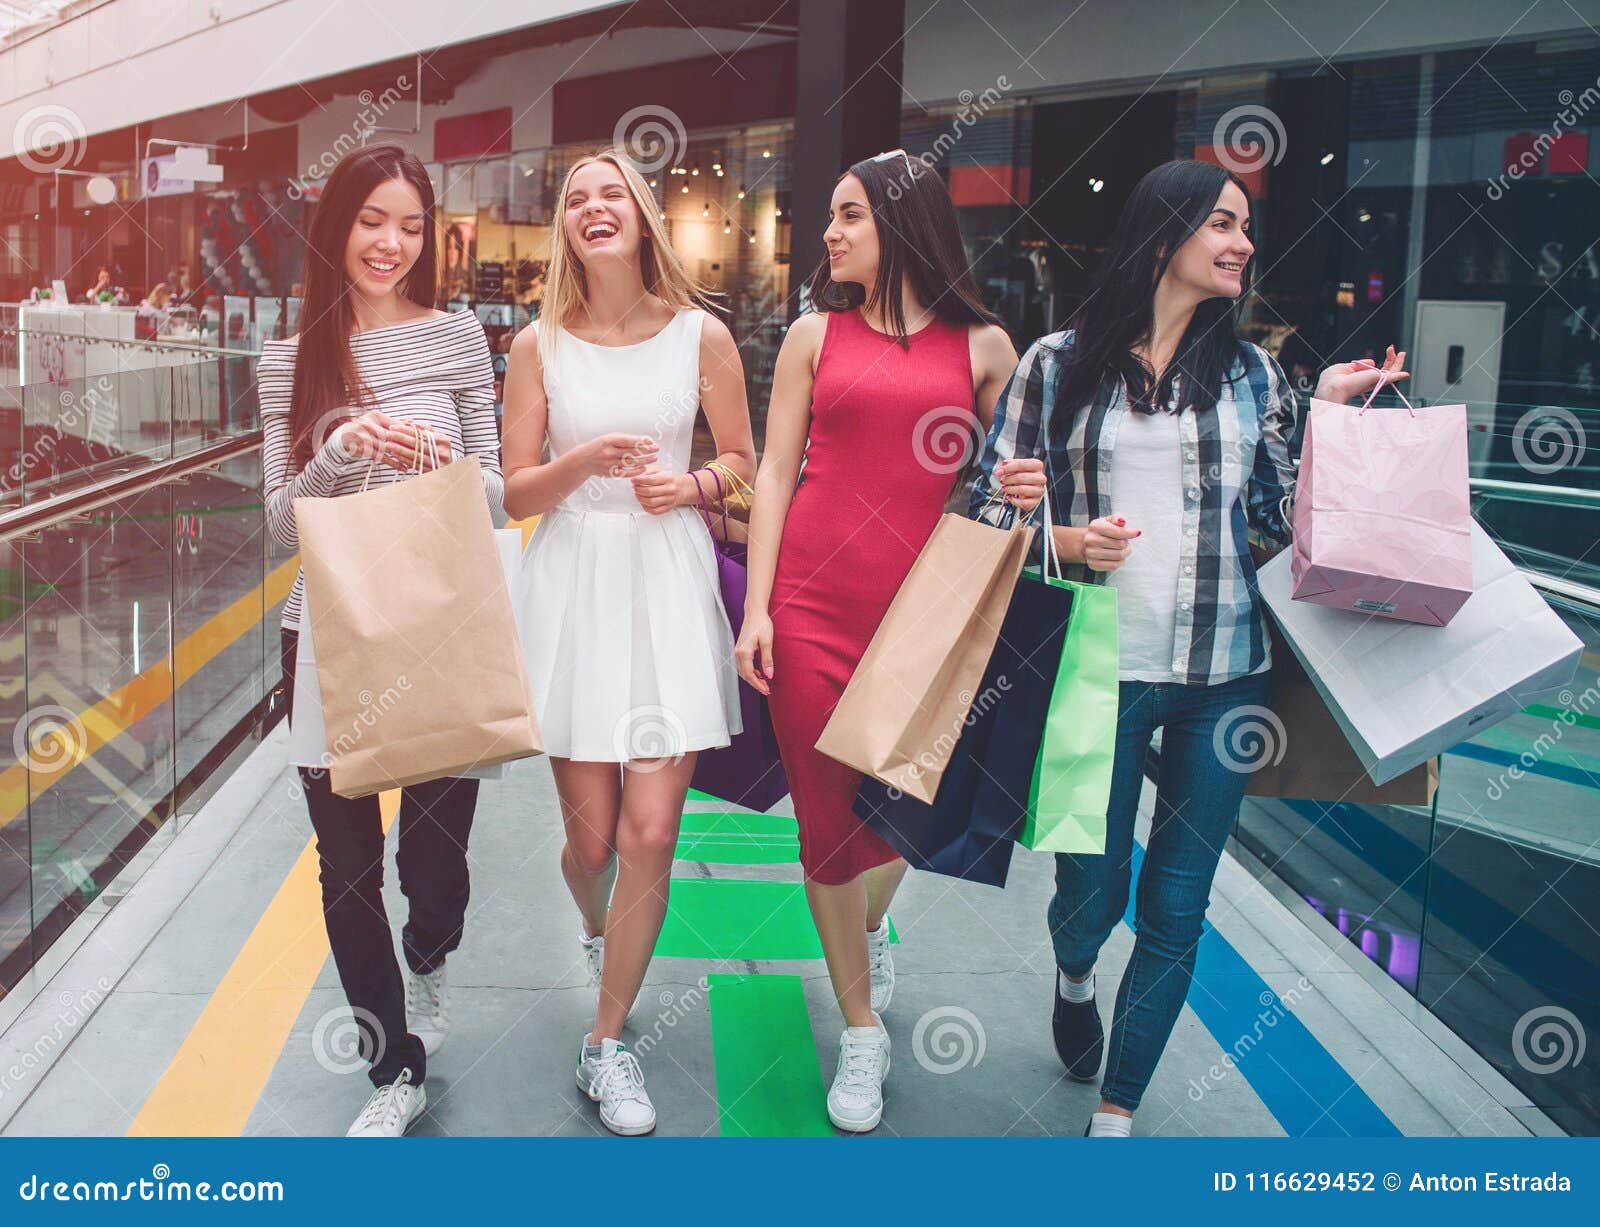 Usually they shopping. Подруги гуляющие по магазинам. Девушка идет \торговый центр. Молодежь в магазине. Девушка гуляет по магазину.